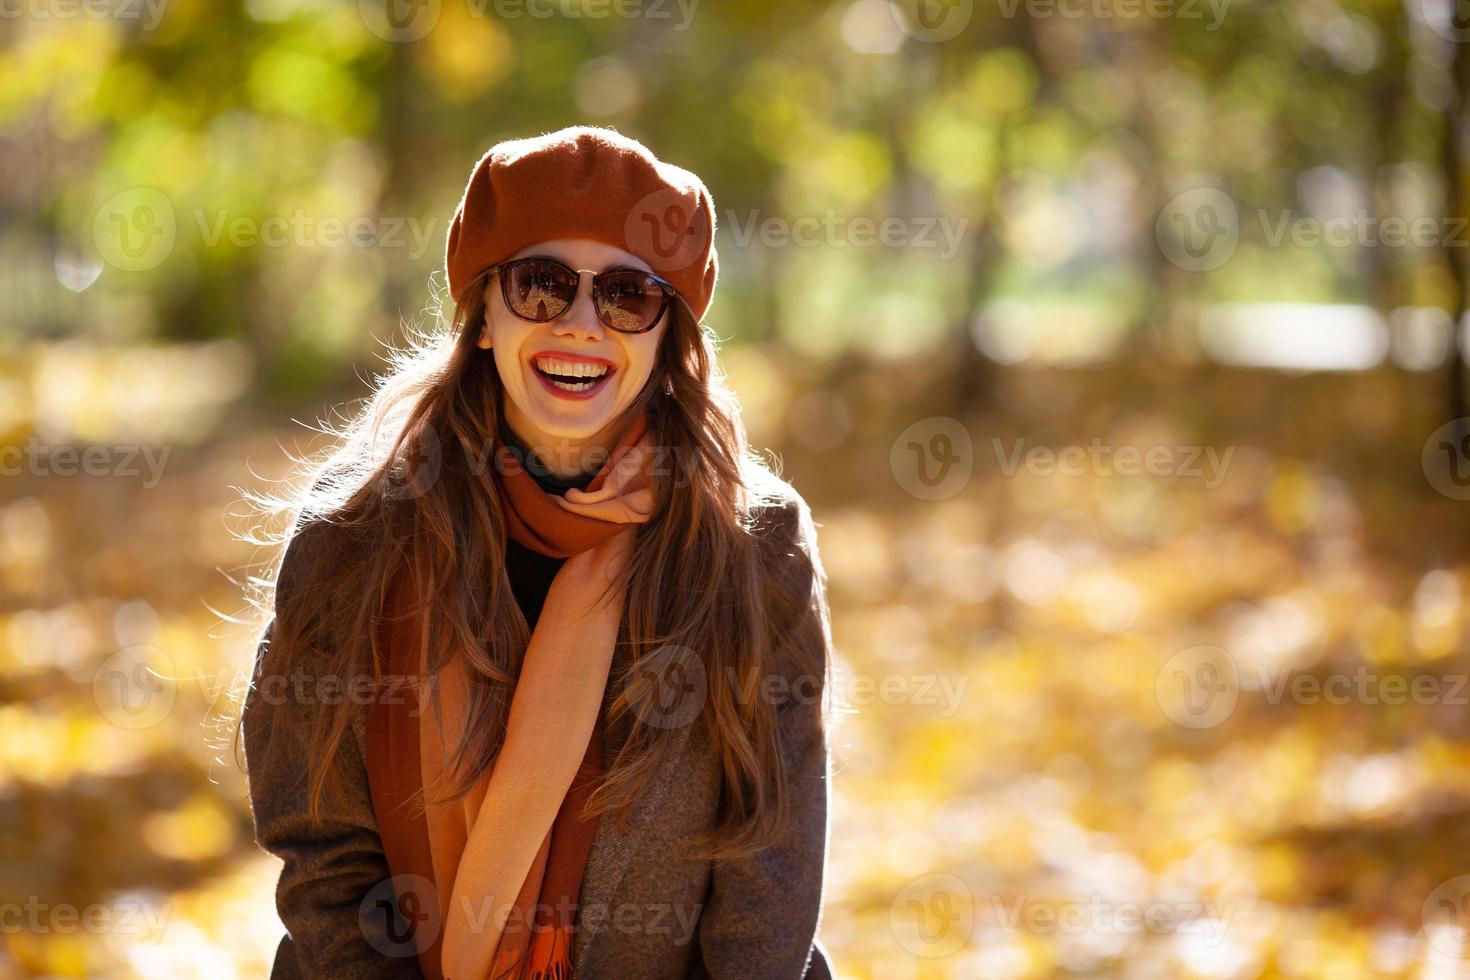 jovem alegre de óculos escuros e boina laranja no outono park foto